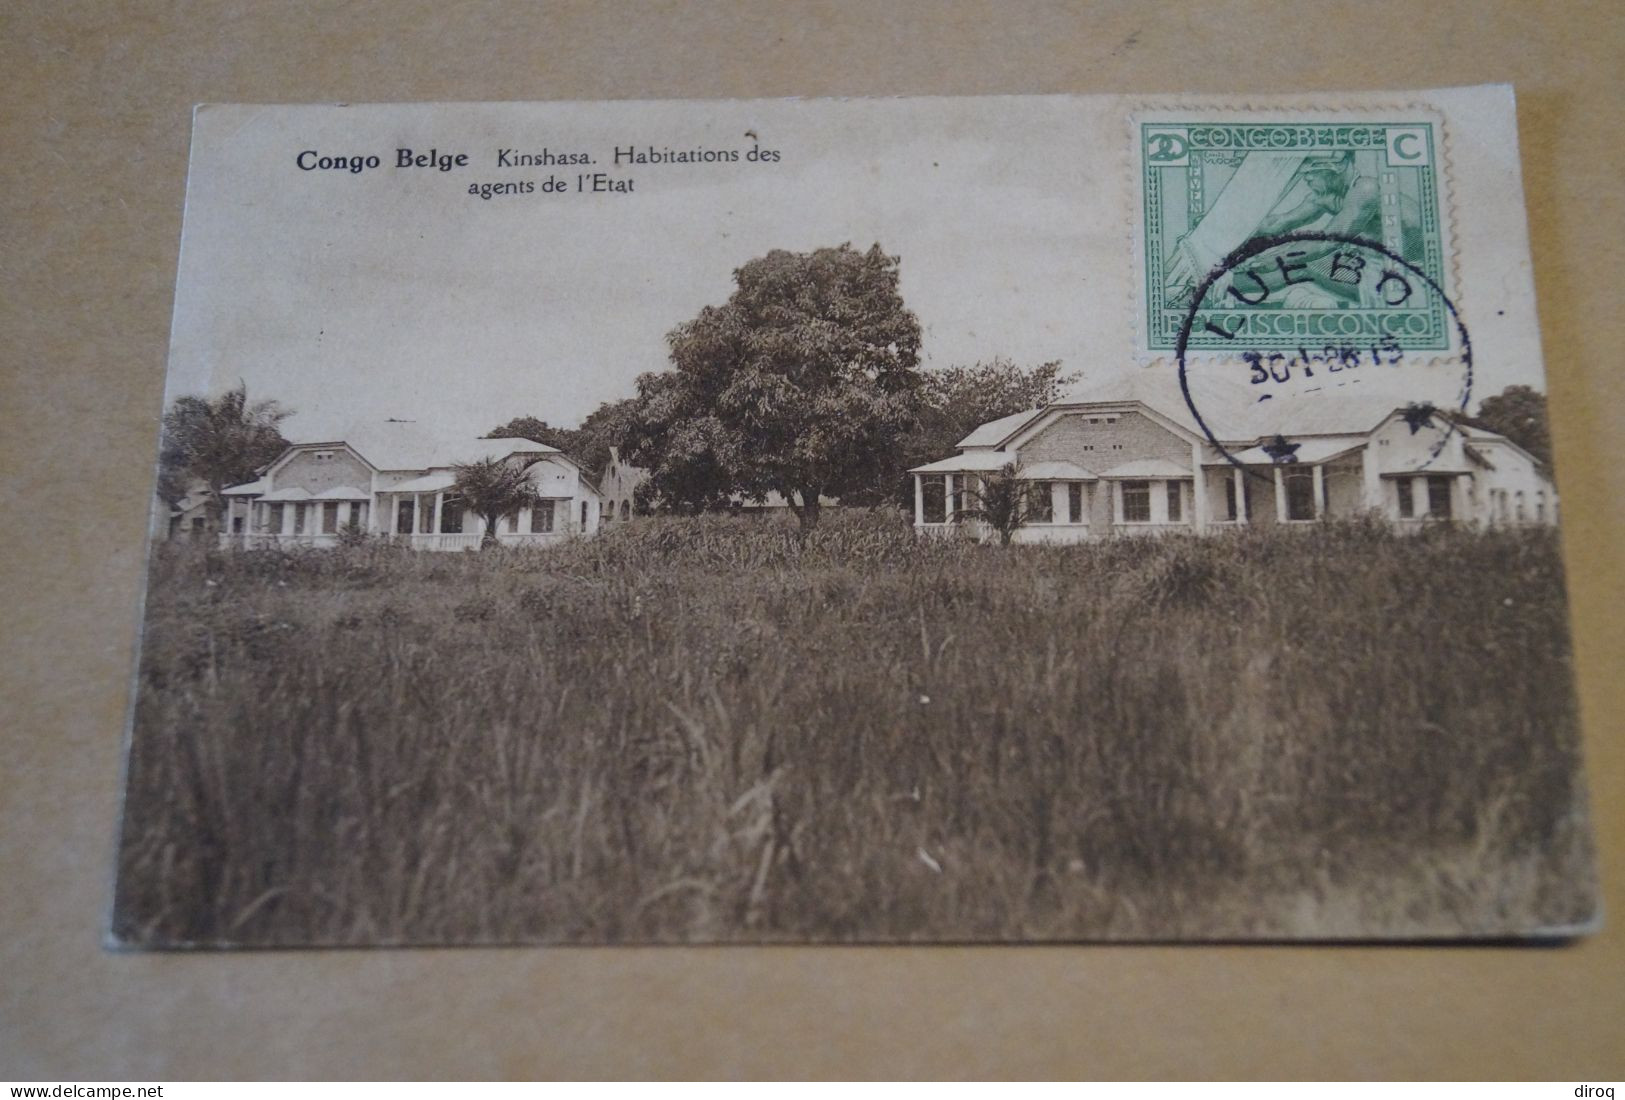 Congo Belge,Kinshasa,oblitération De Luebo,Très Belle Ancienne Carte,à Voyagé,pour Collection - Congo Belge